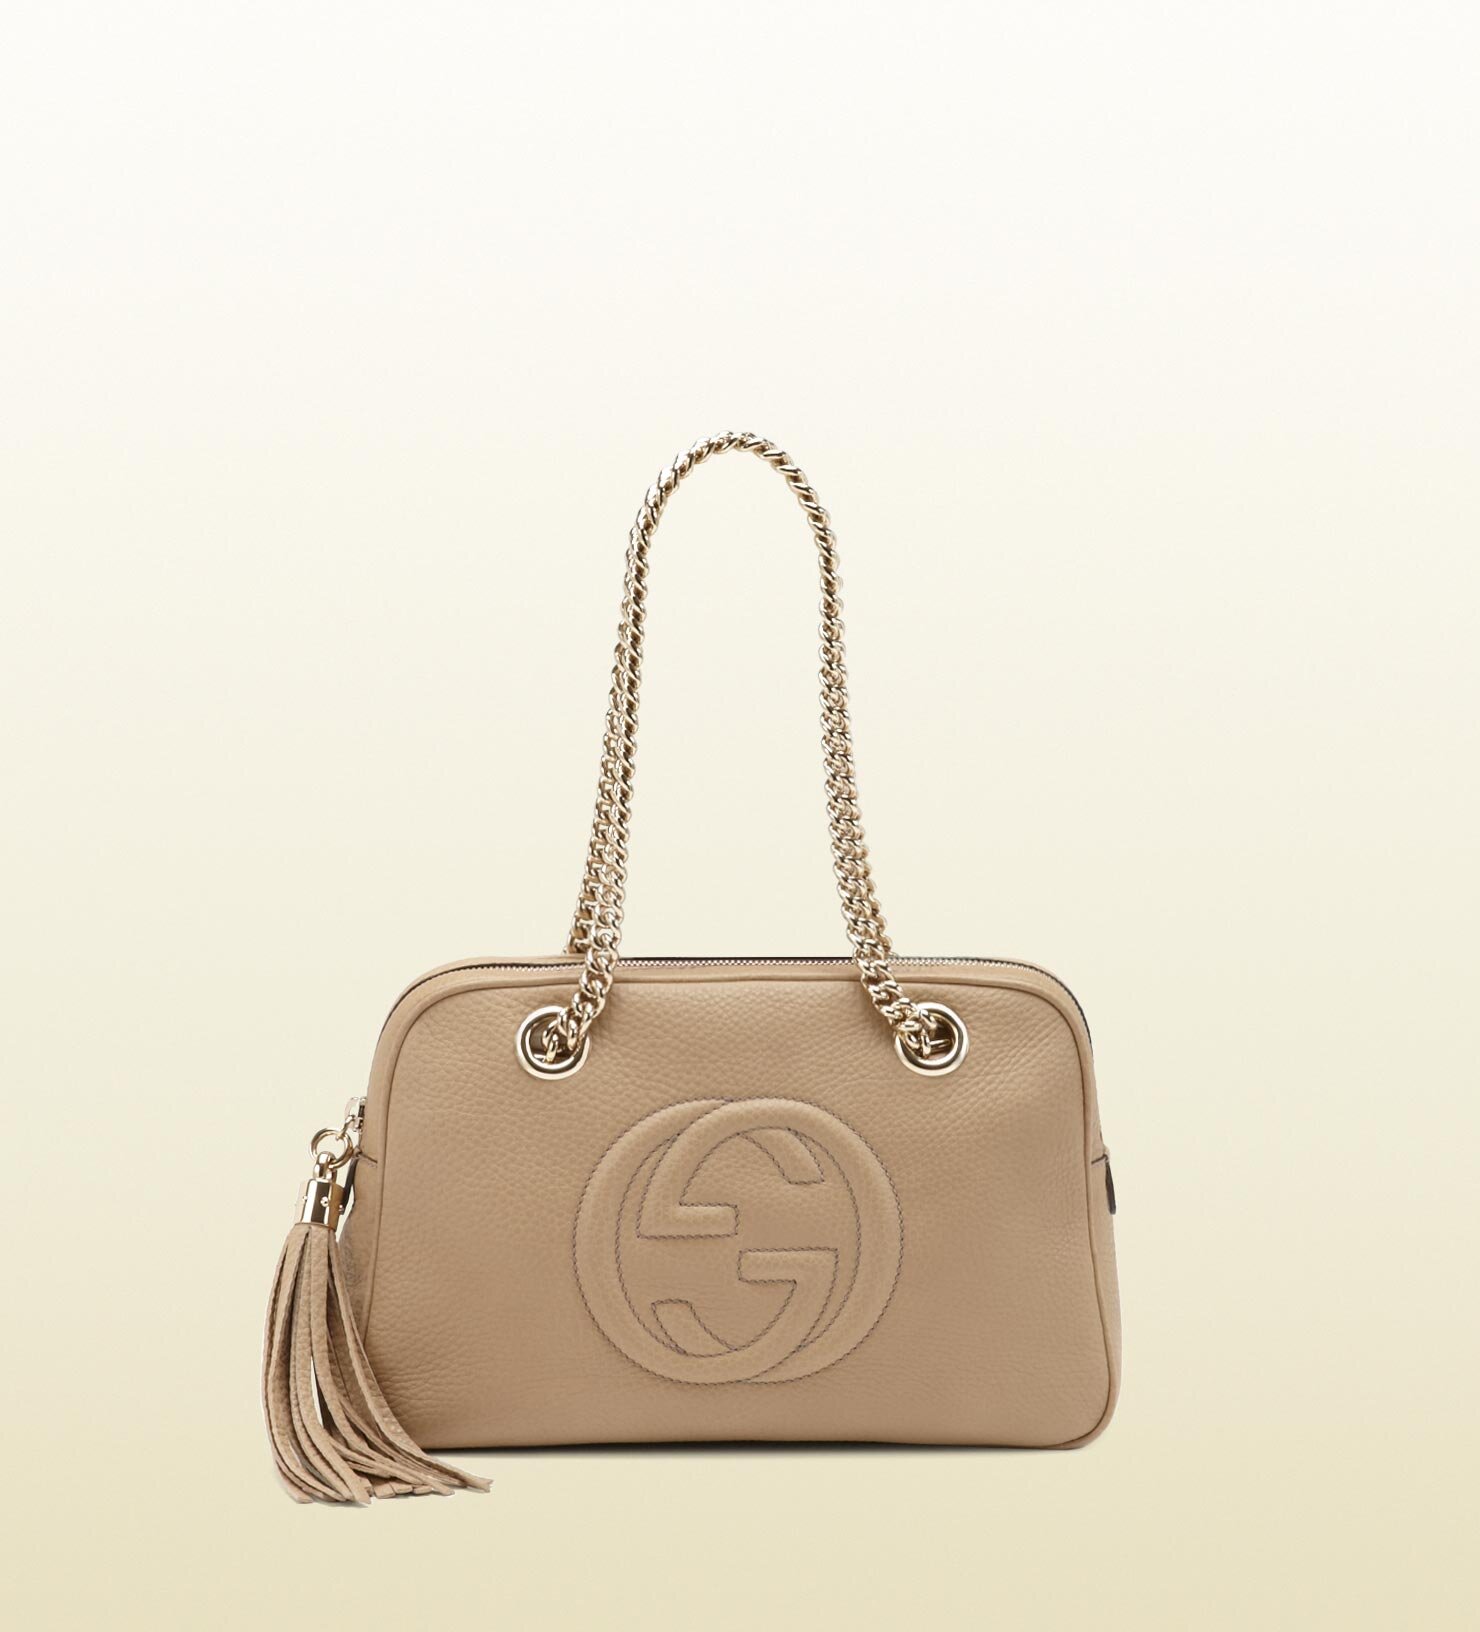 Gucci Soho Leather Shoulder Bag in Natural.jpg